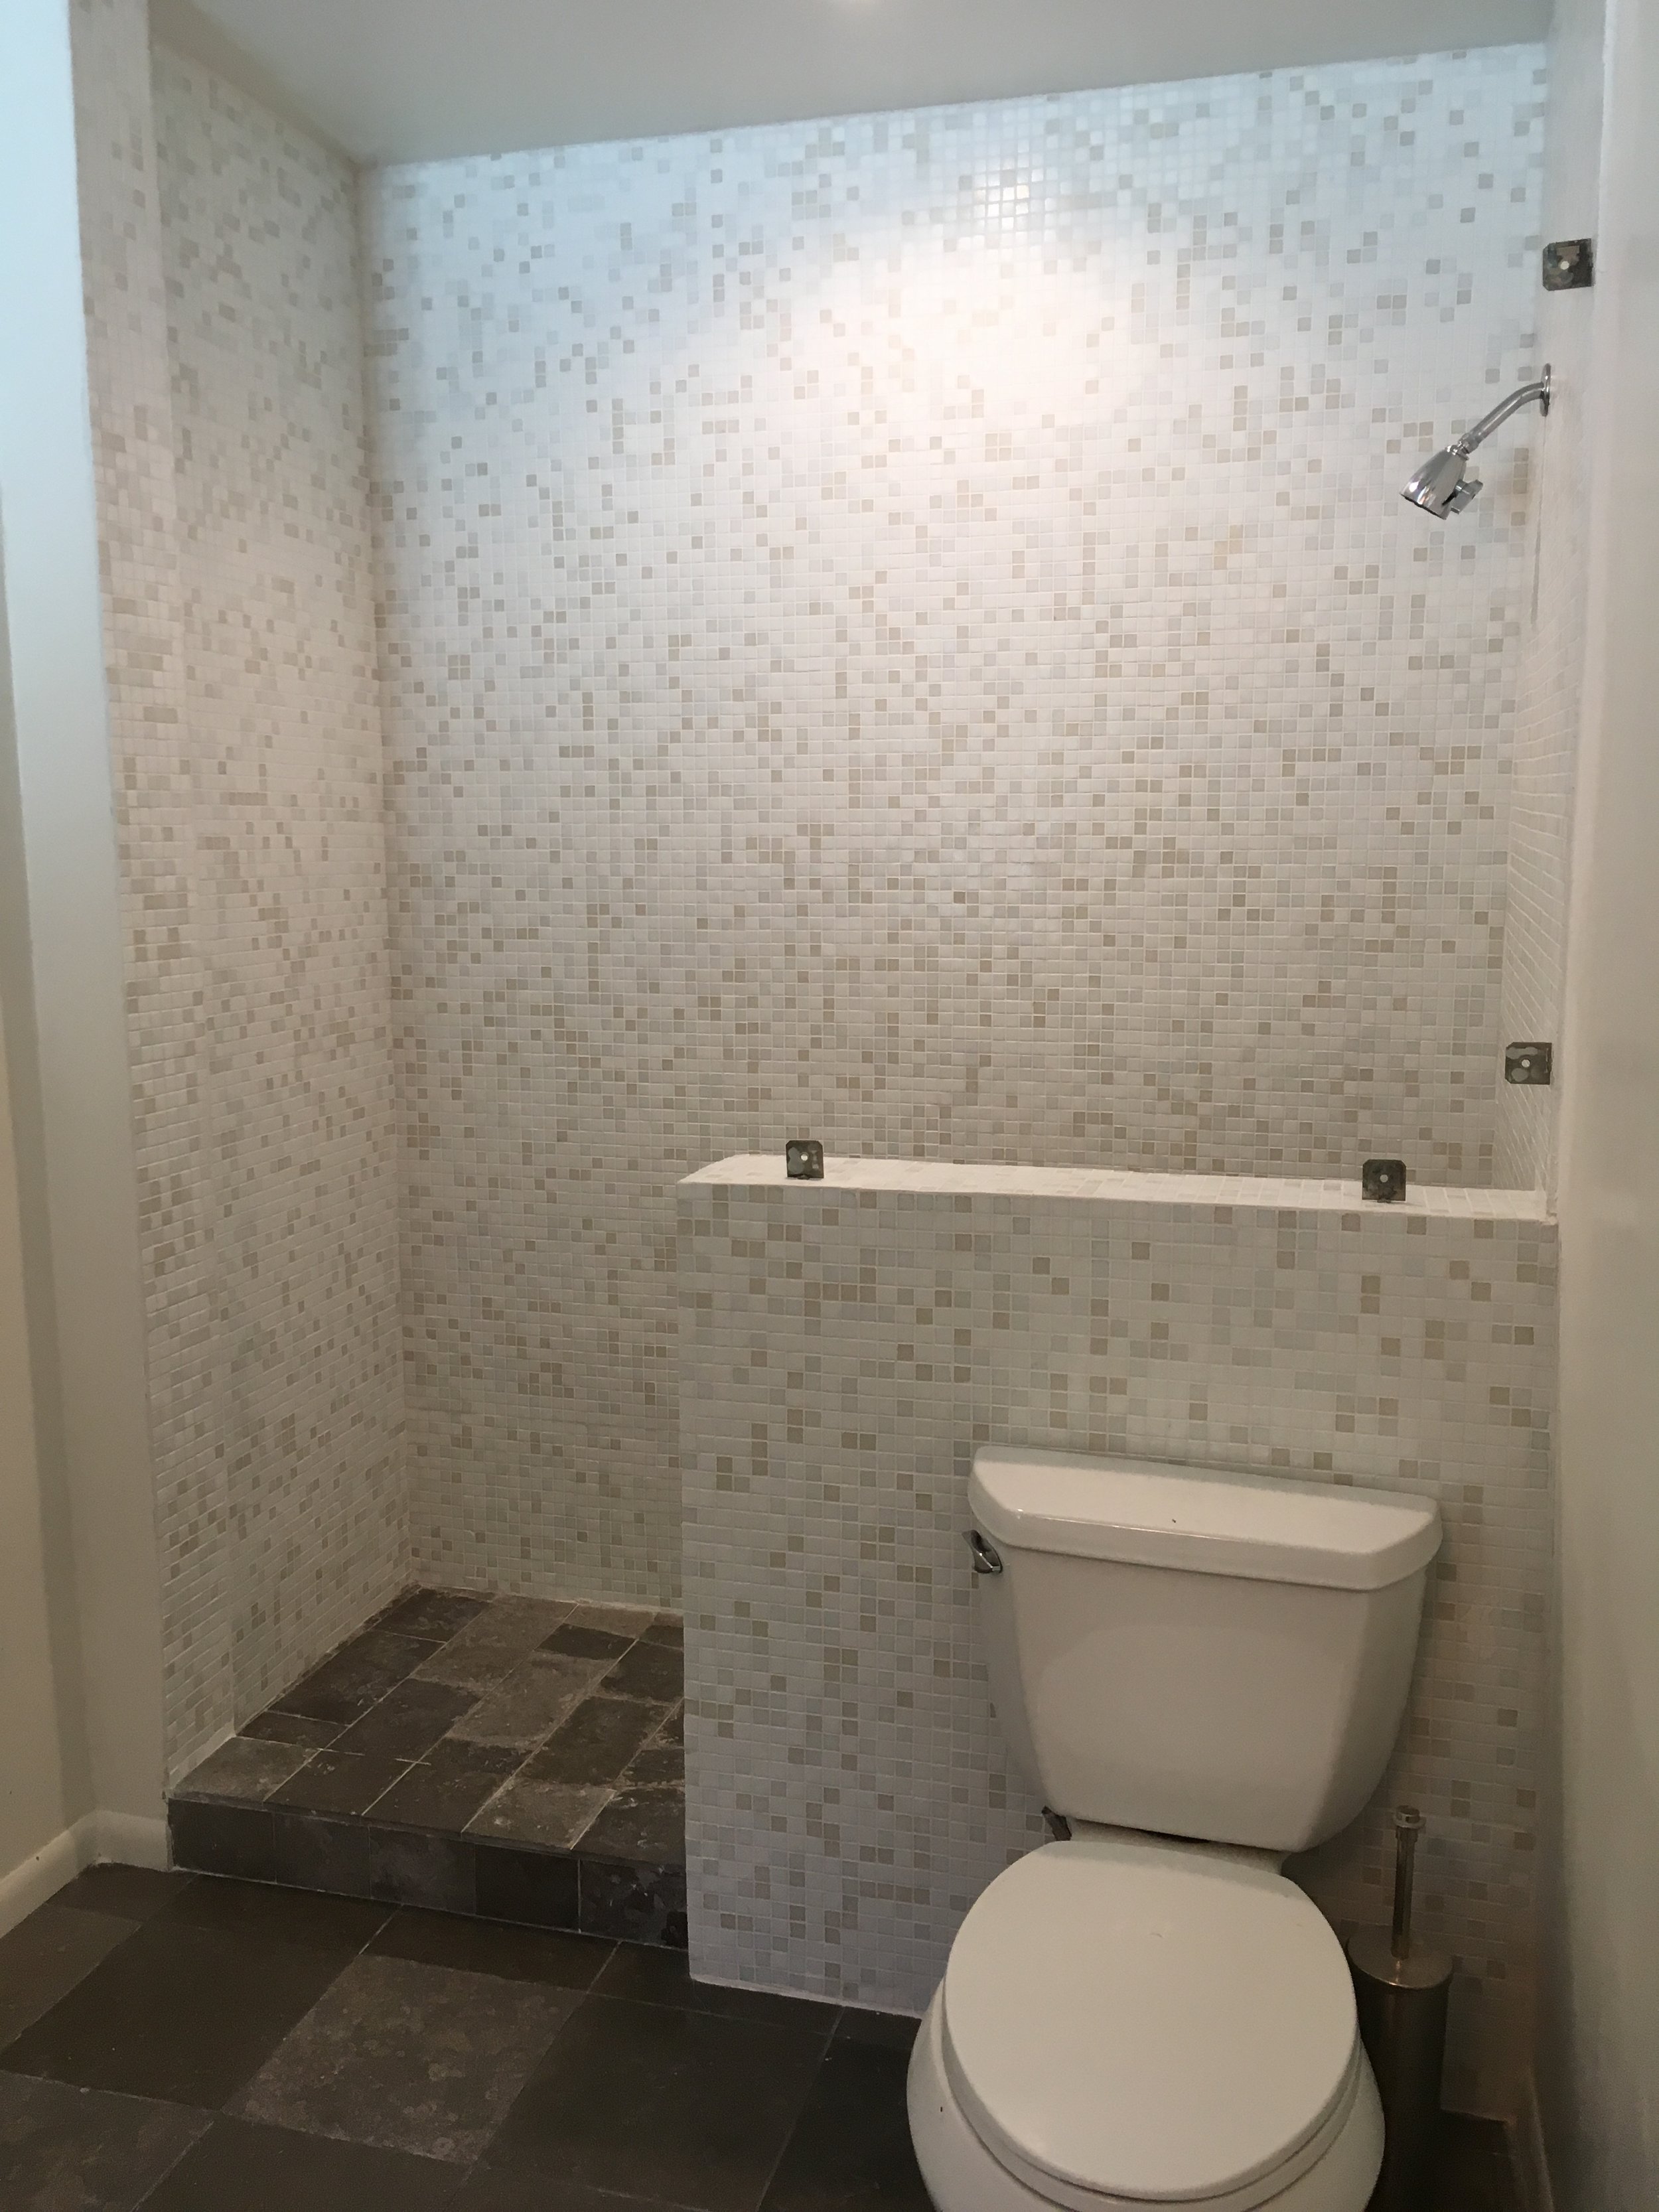 Encino Bathroom Install